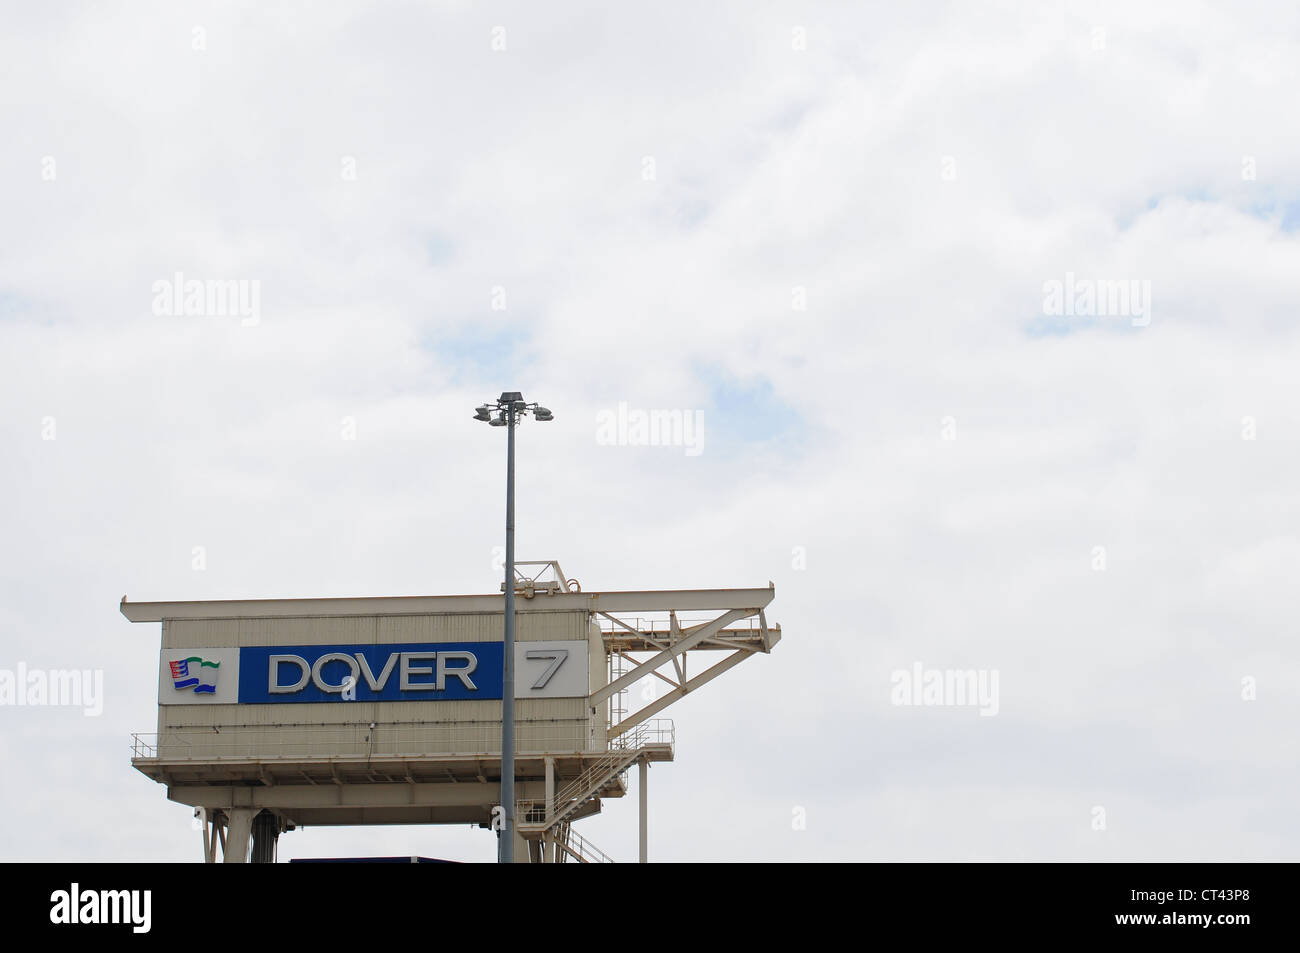 Loading bay at Dover docks Stock Photo